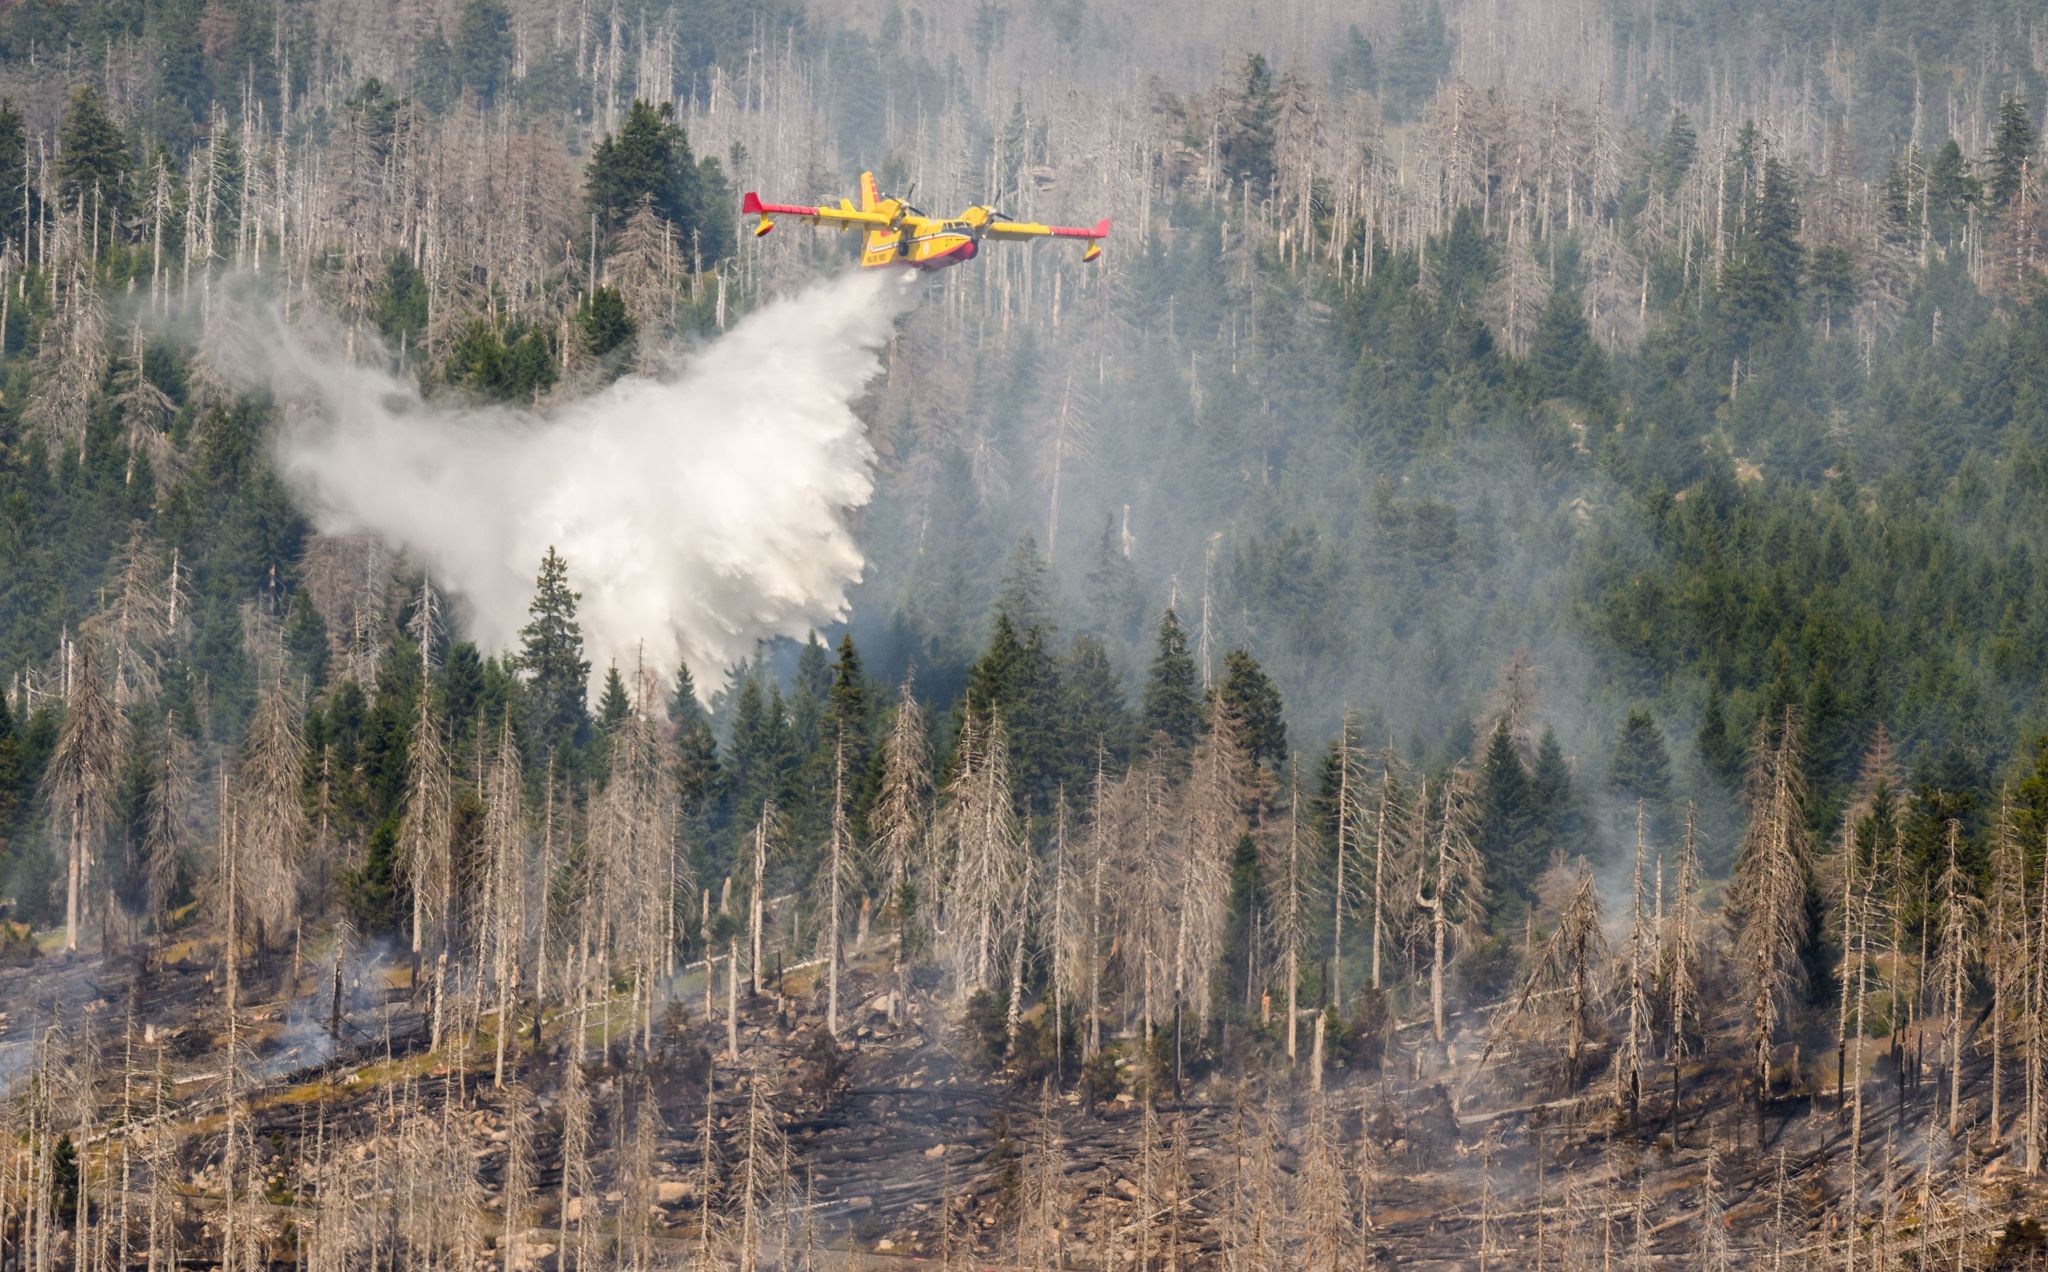 Ein italienisches Löschflugzeug bekämpft einen Waldbrand am Brocken.